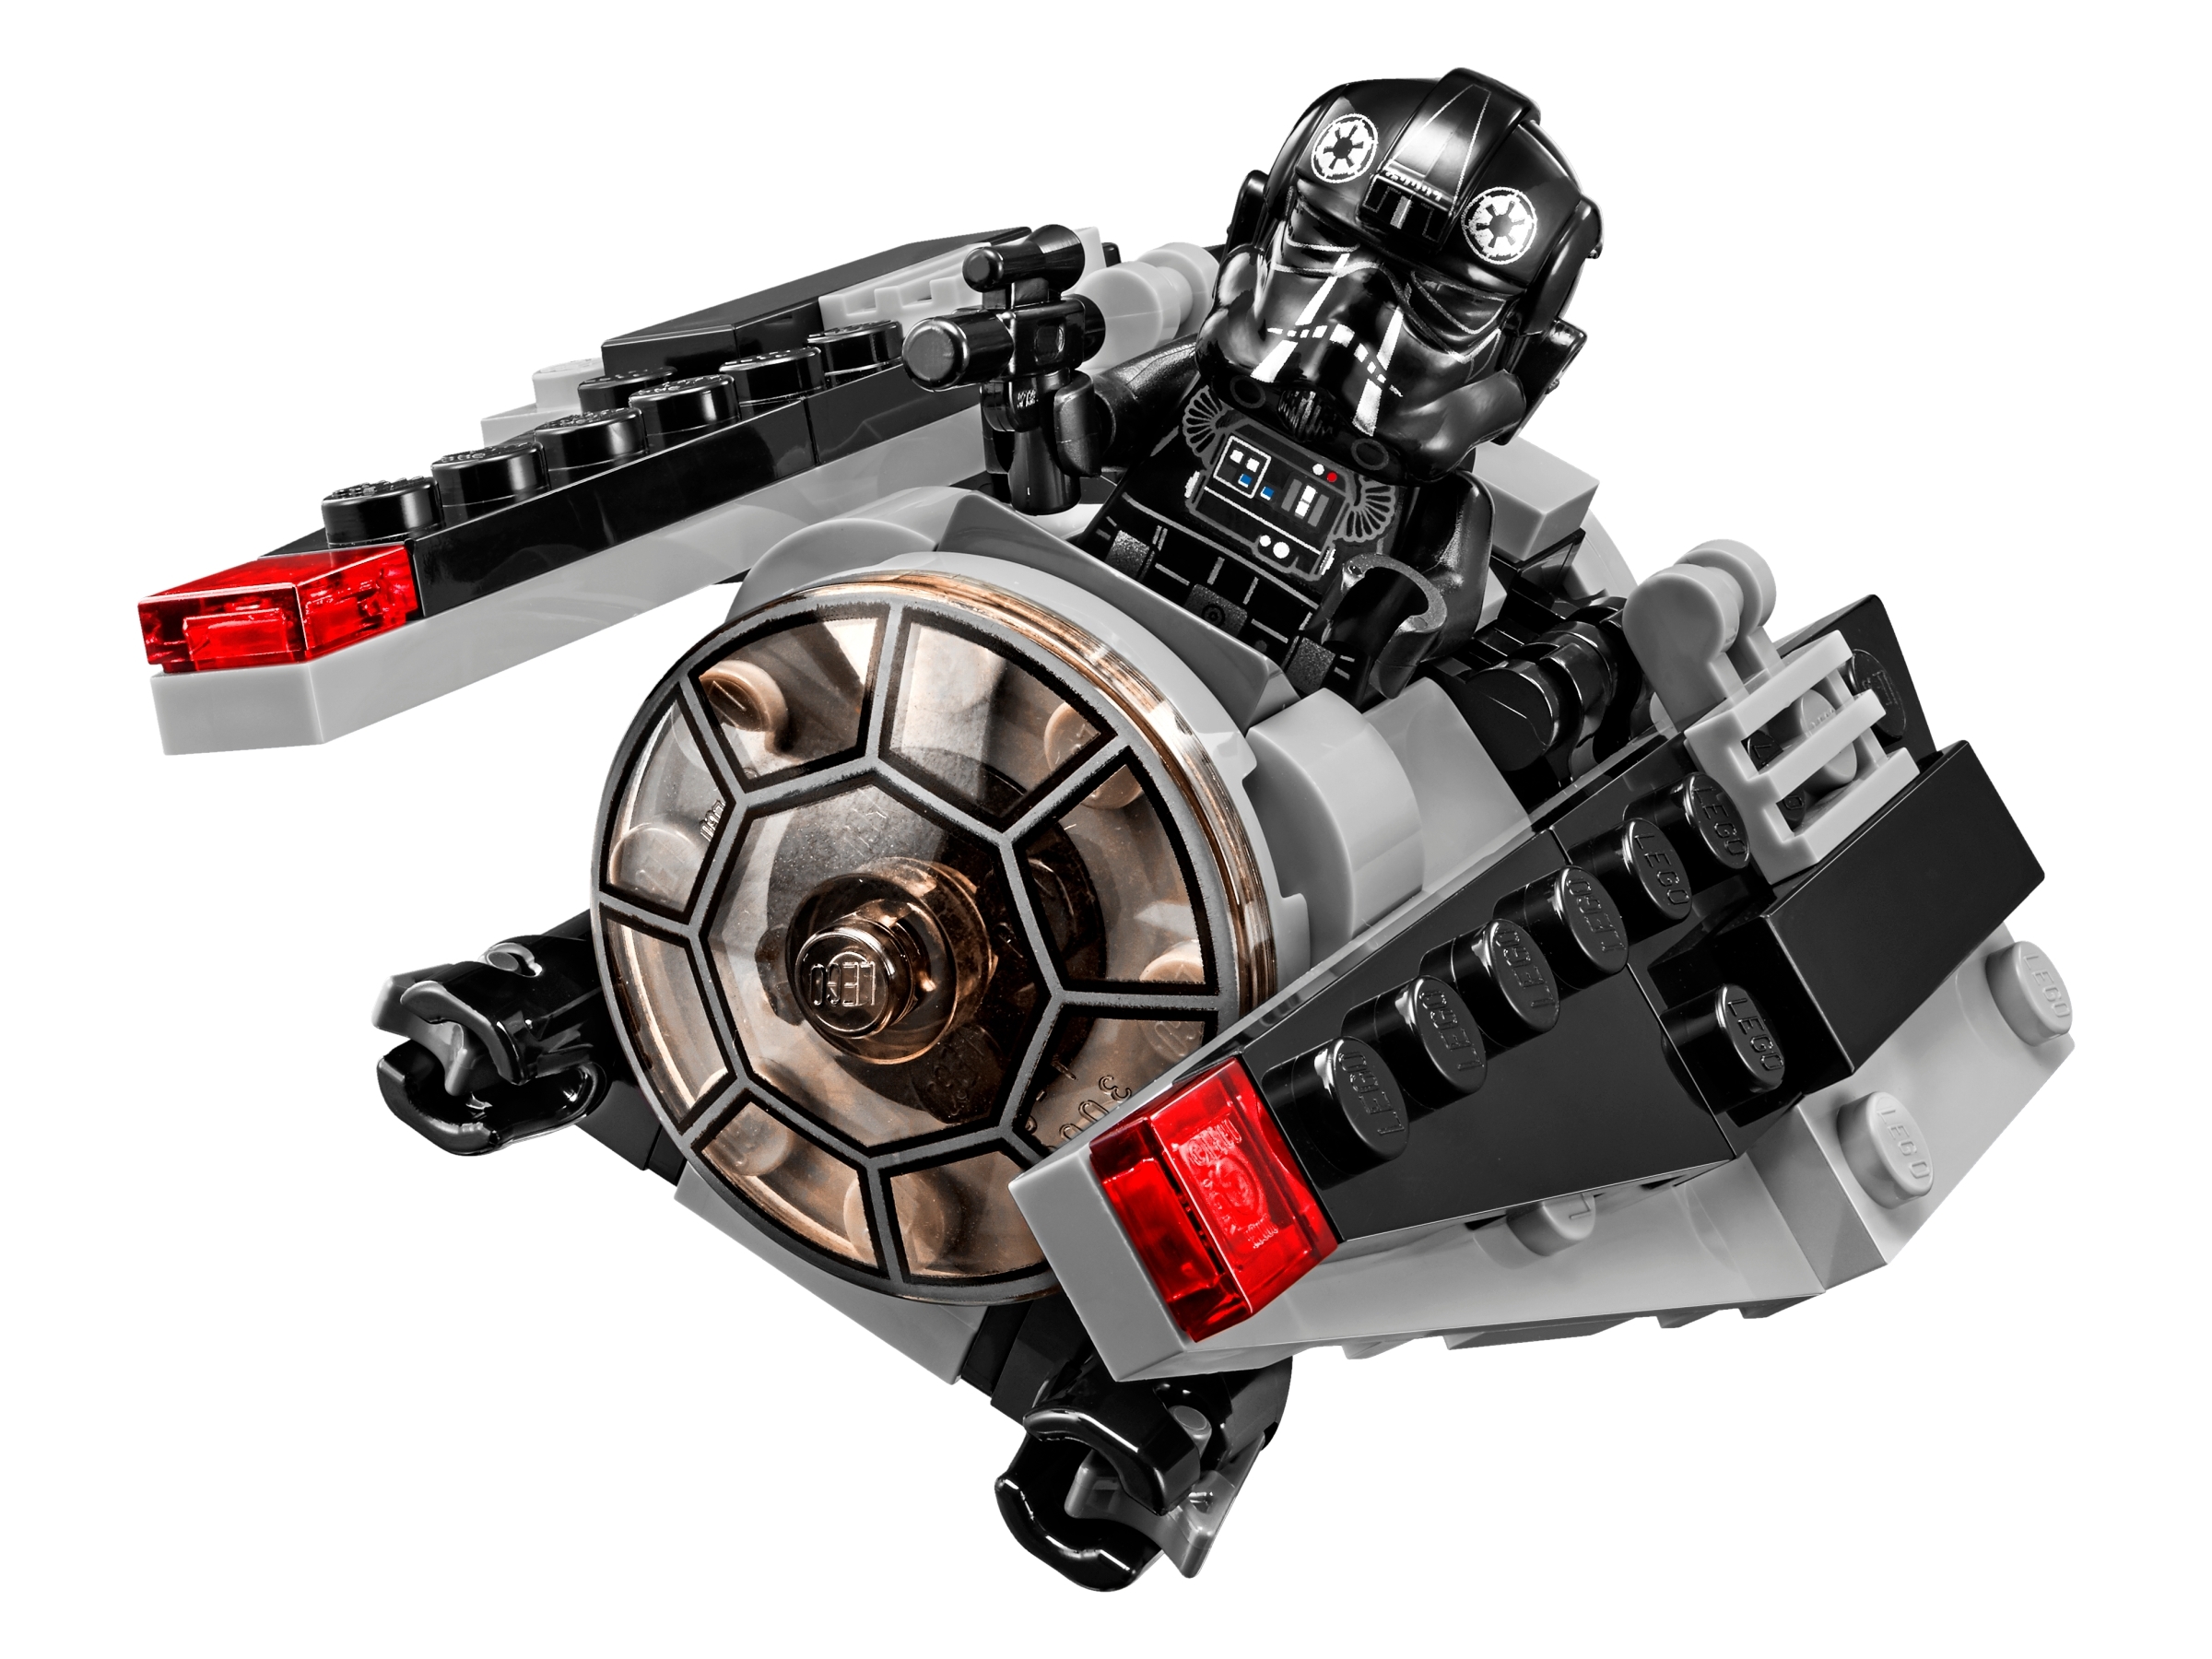 LEGO Star Wars Set 75161 Tie Striker Microfighter